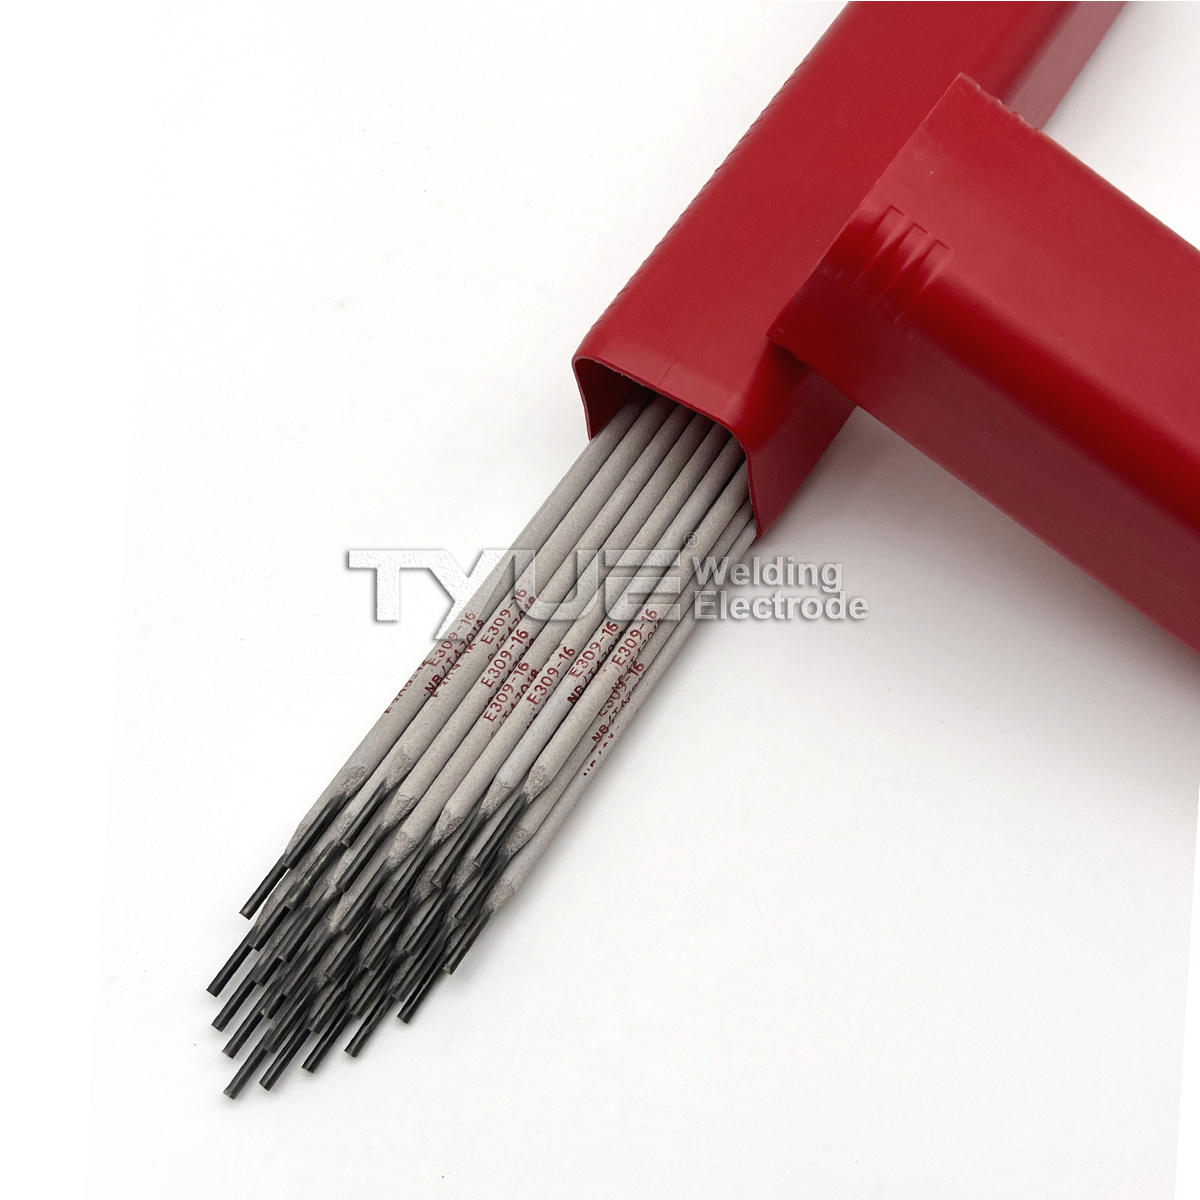 AWS A5.4 E309-16 Stainless Steel Welding Electrode Welding Consumables Welding Materials, Welding Stick